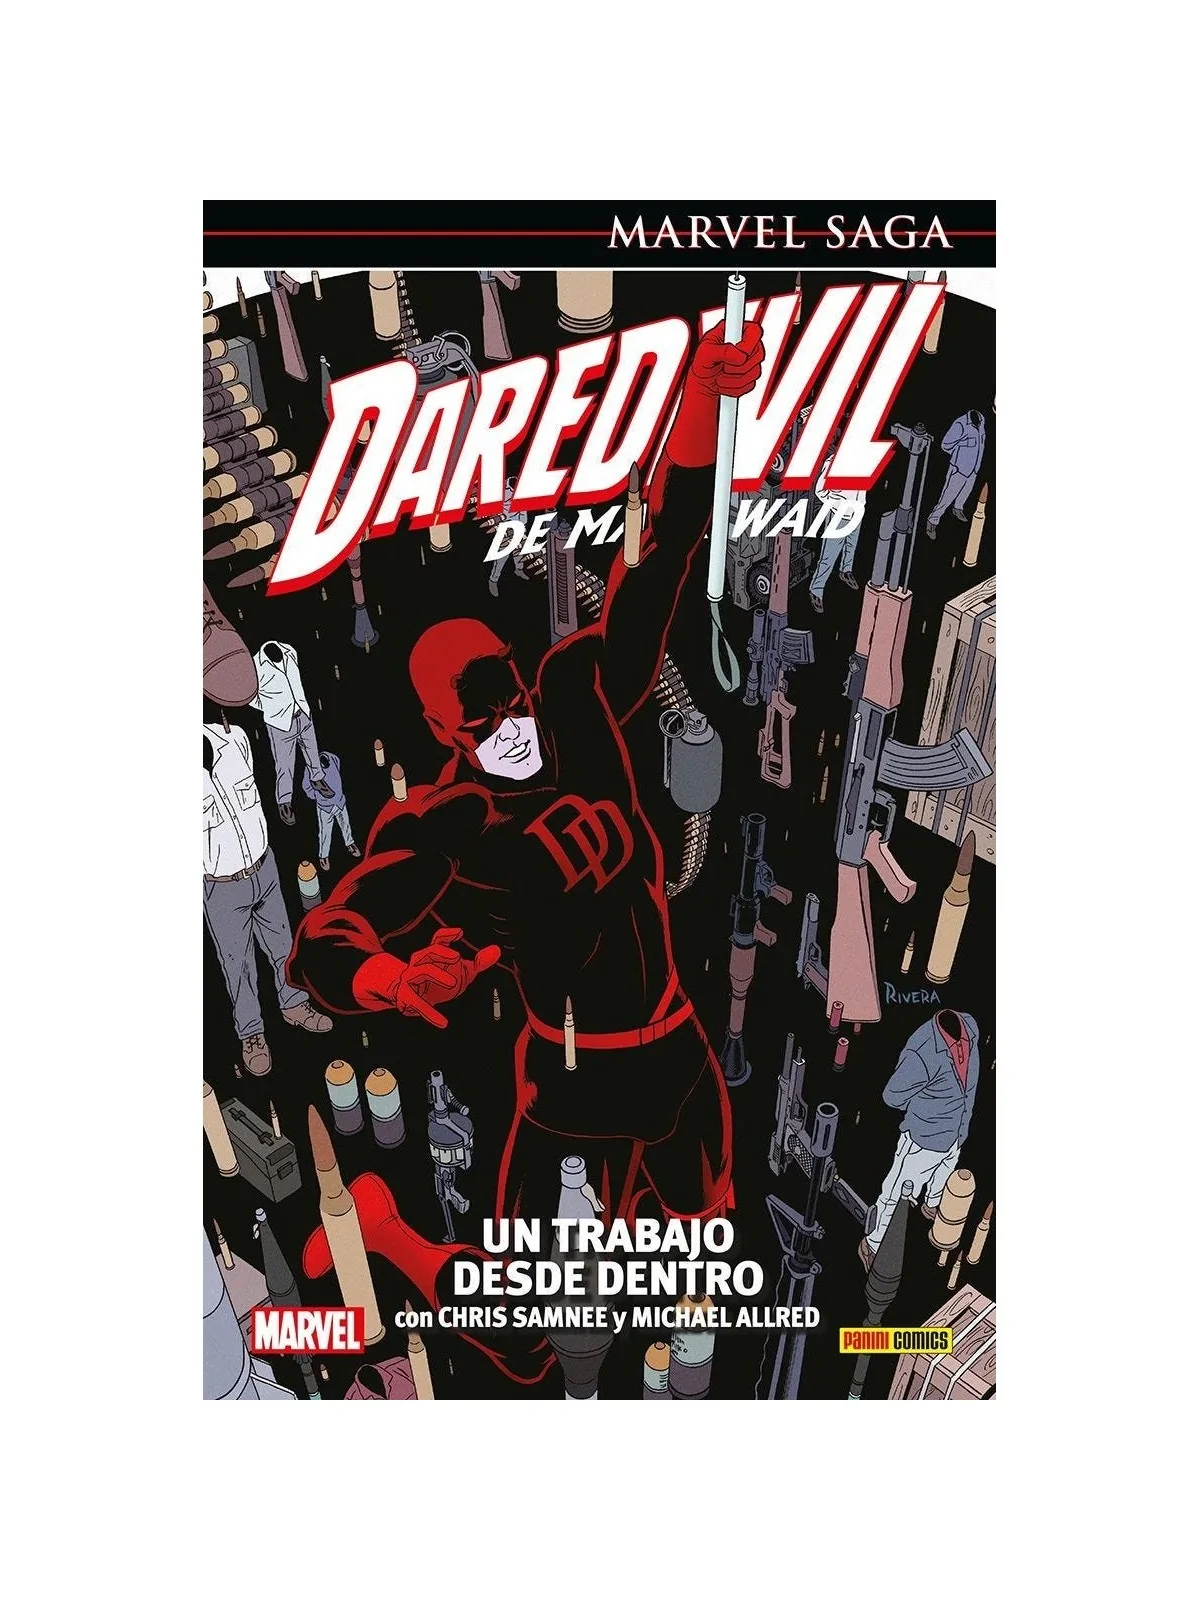 Comprar Marvel Saga: Daredevil de Mark Waid 04 barato al mejor precio 